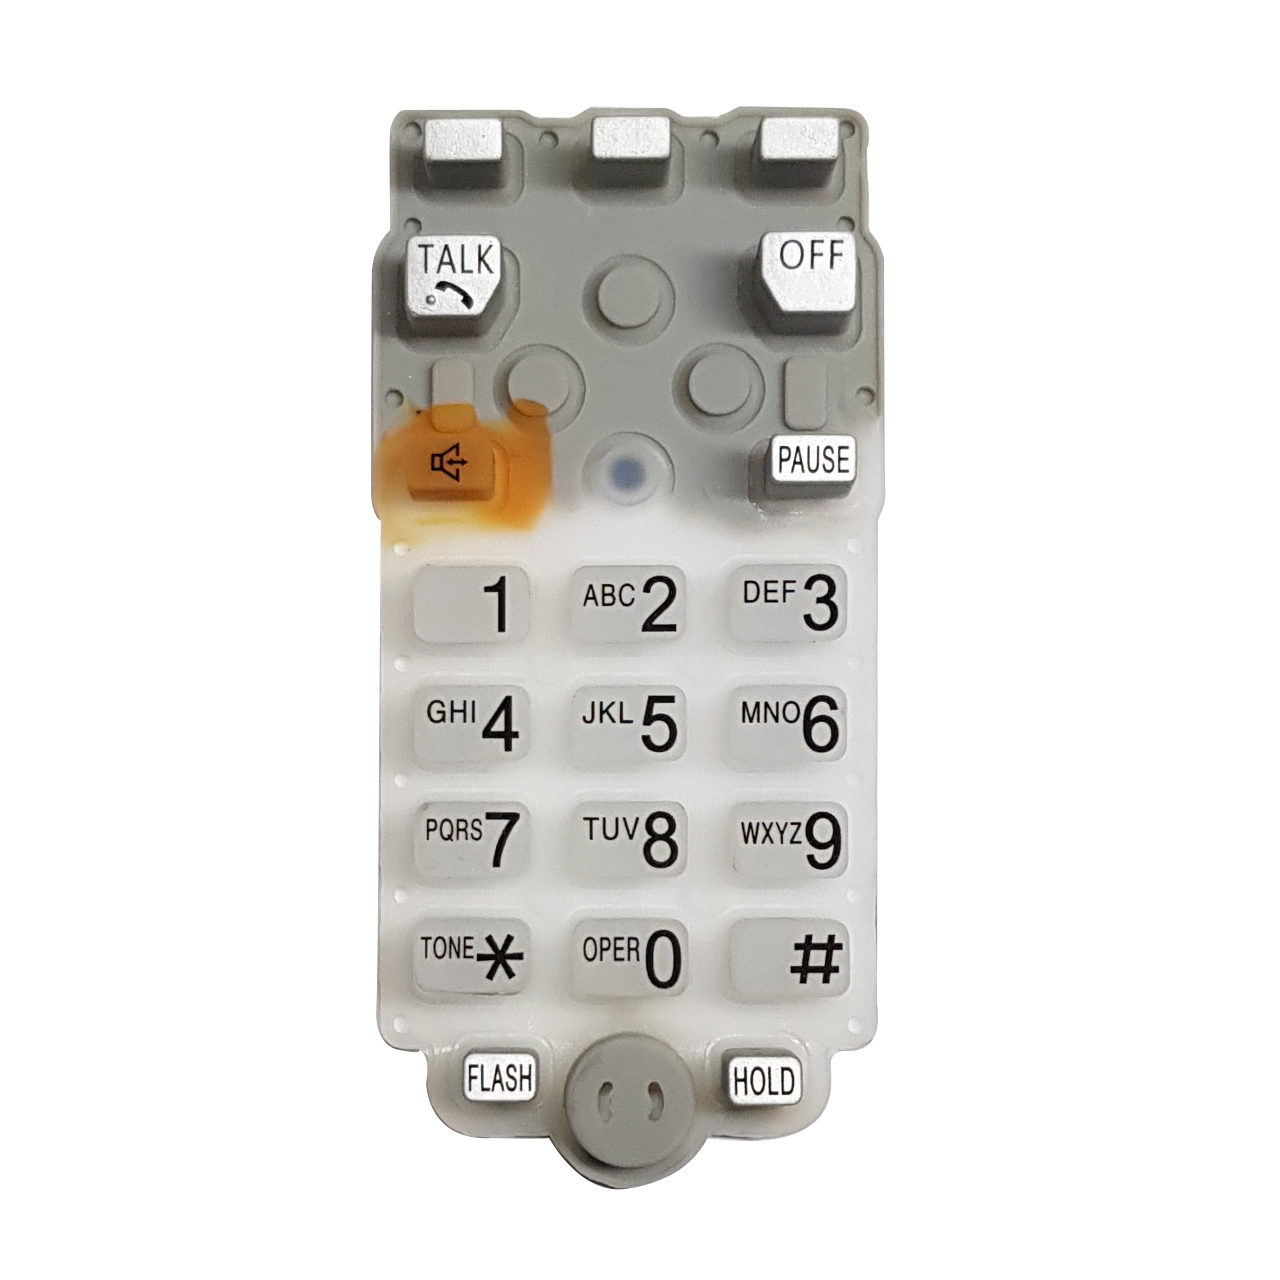 شماره گیر مدل 5771 مناسب تلفن پاناسونیک